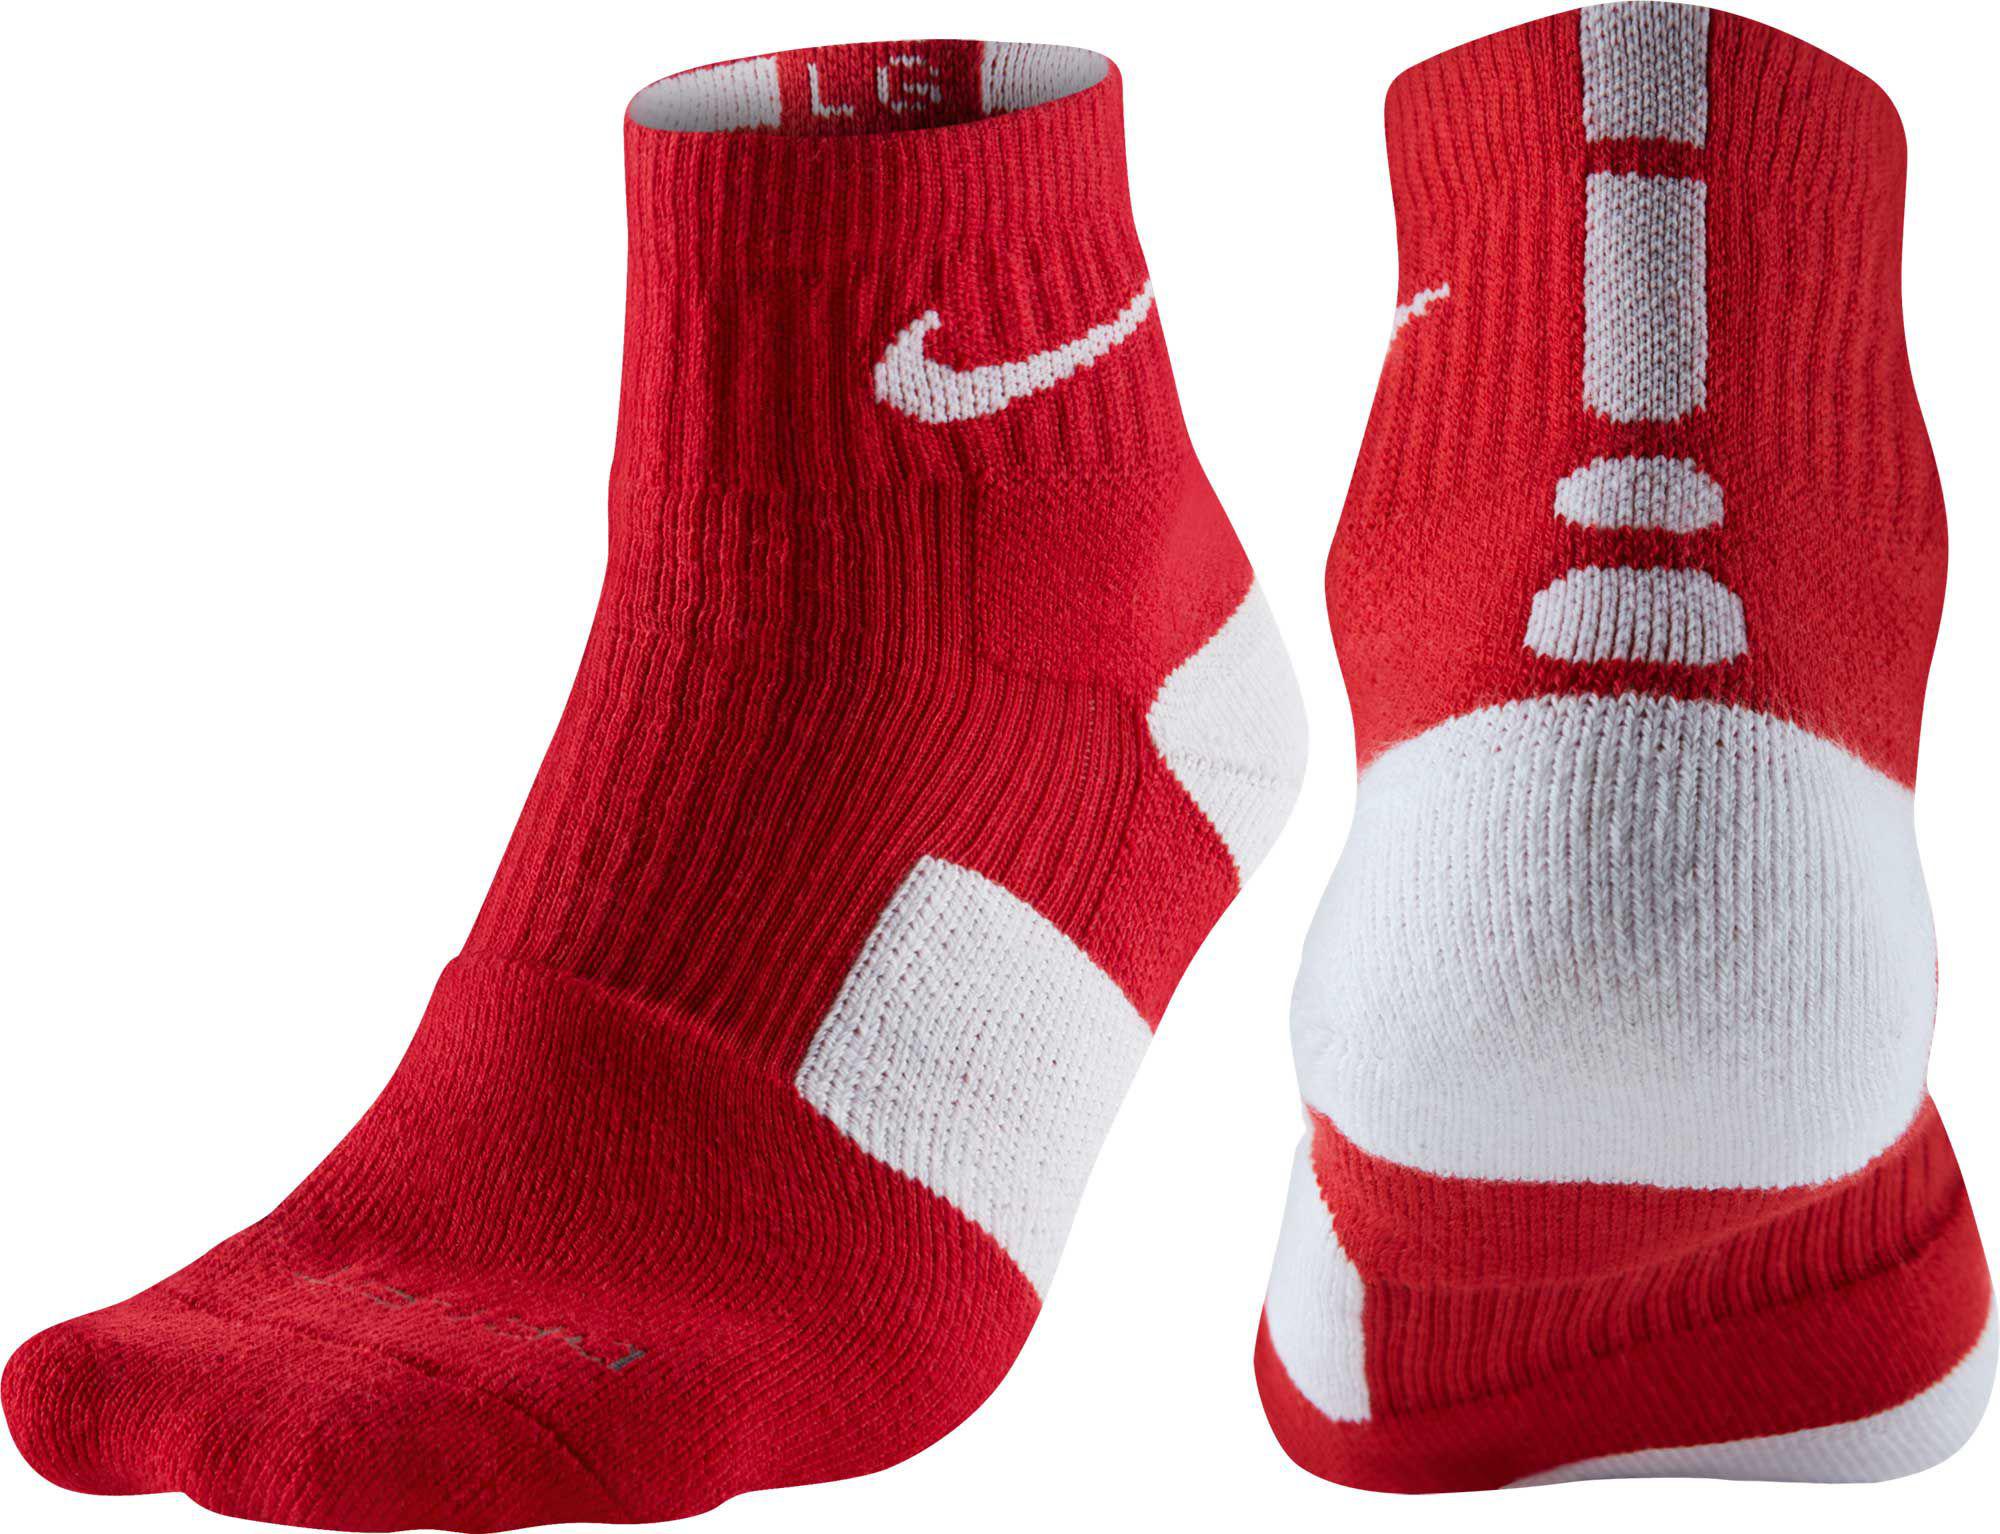 Nike Synthetic Elite High Quarter Basketball Socks in Red/White (Red ...